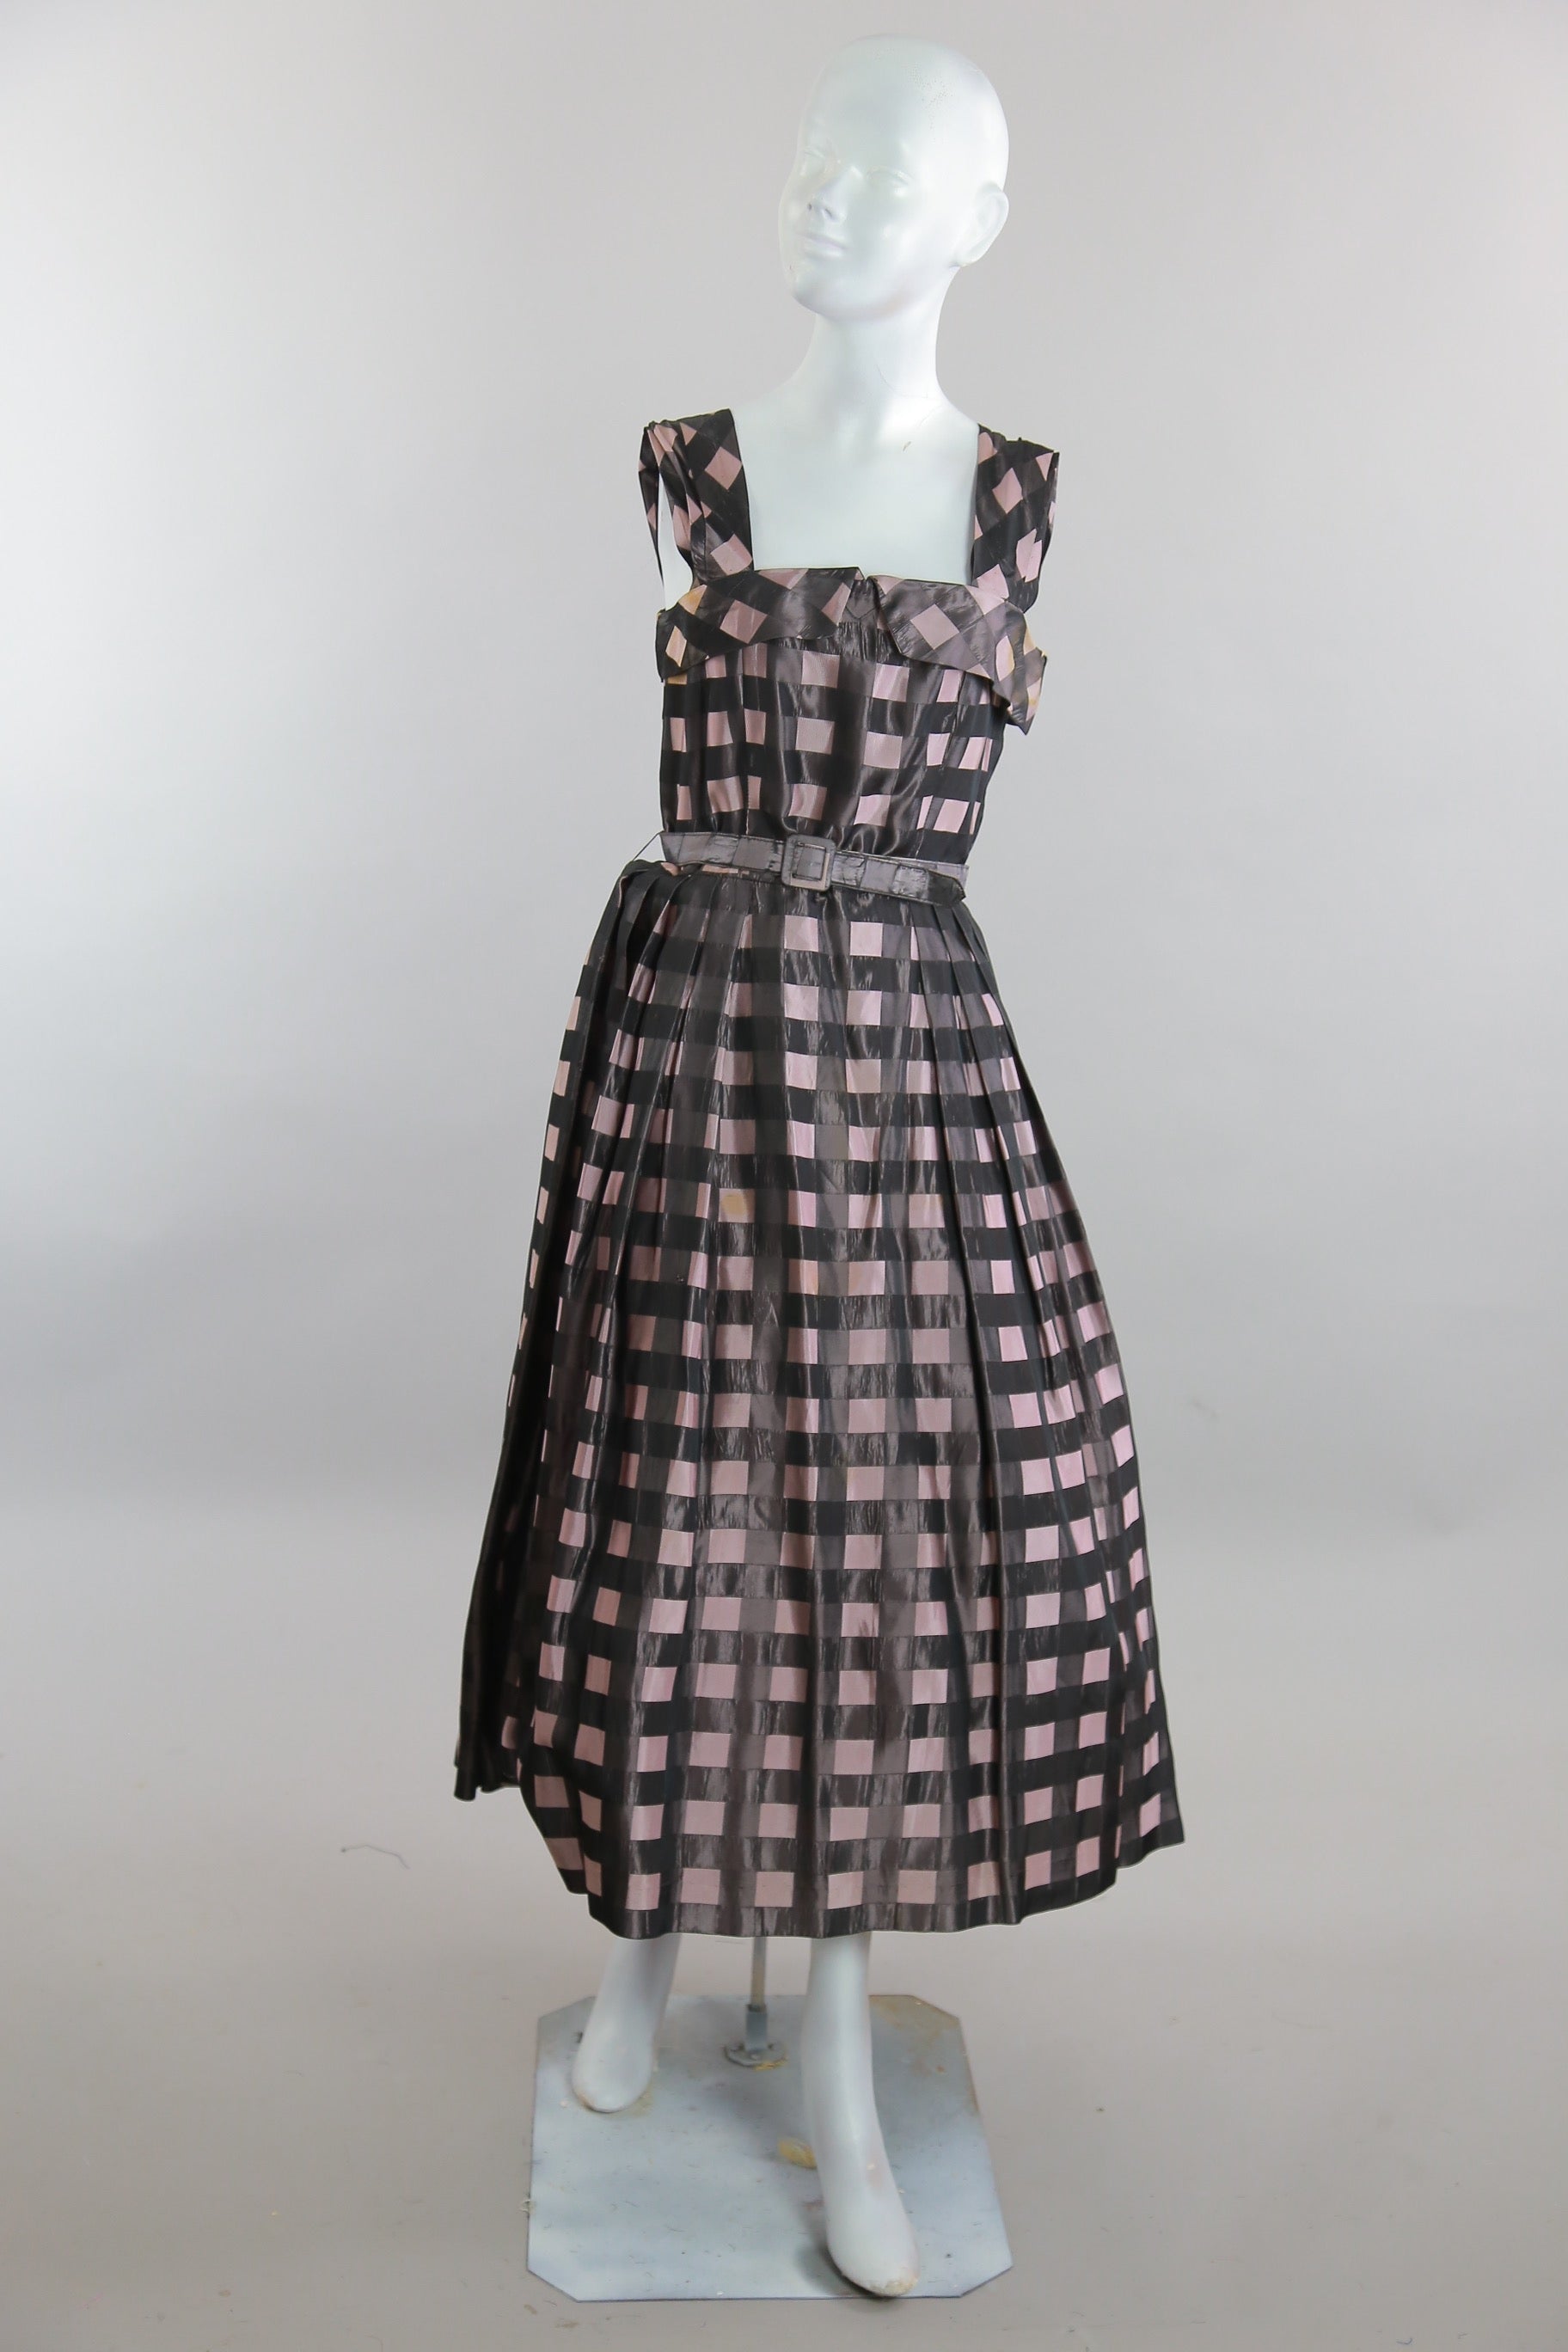 Vintage 50s 60s belted plaid pink black dress sundress swing dance rockabilly